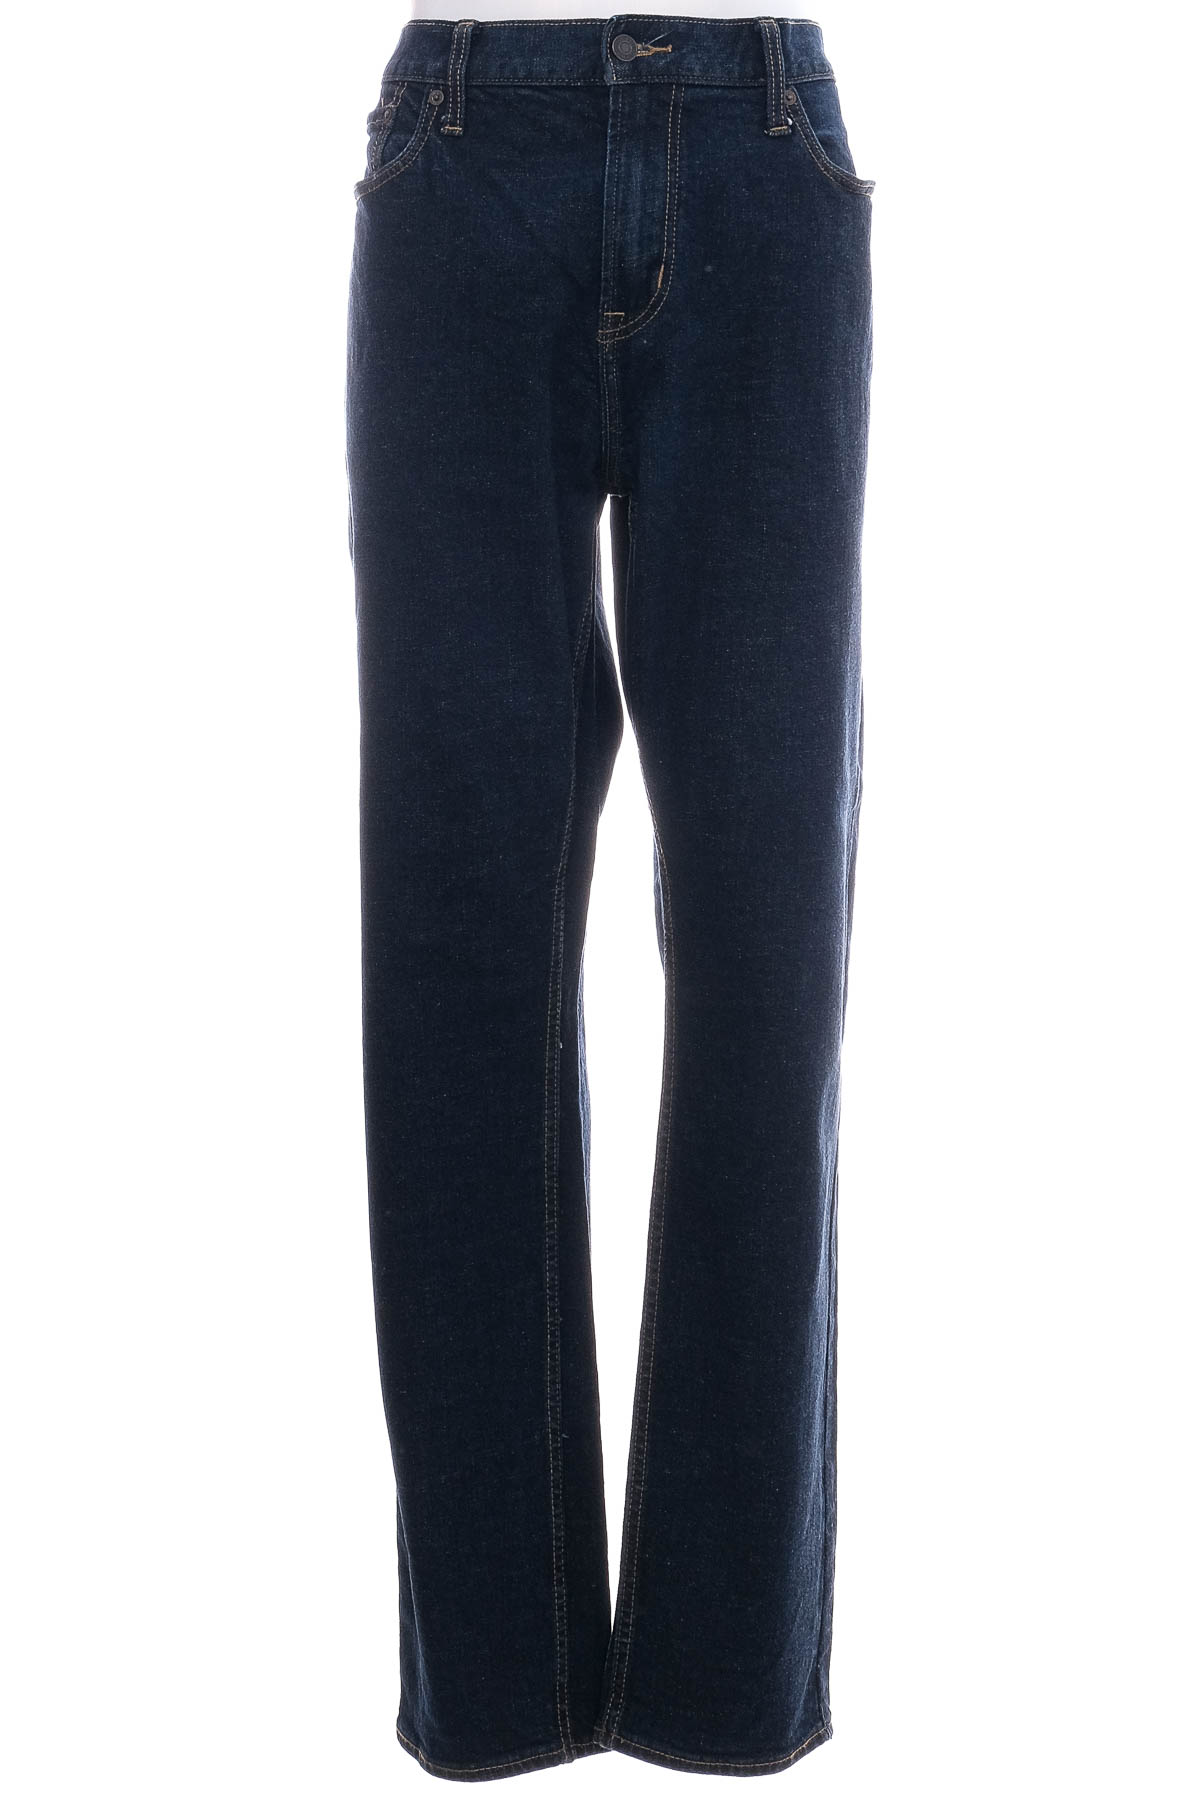 Jeans pentru bărbăți - OLD NAVY - 0